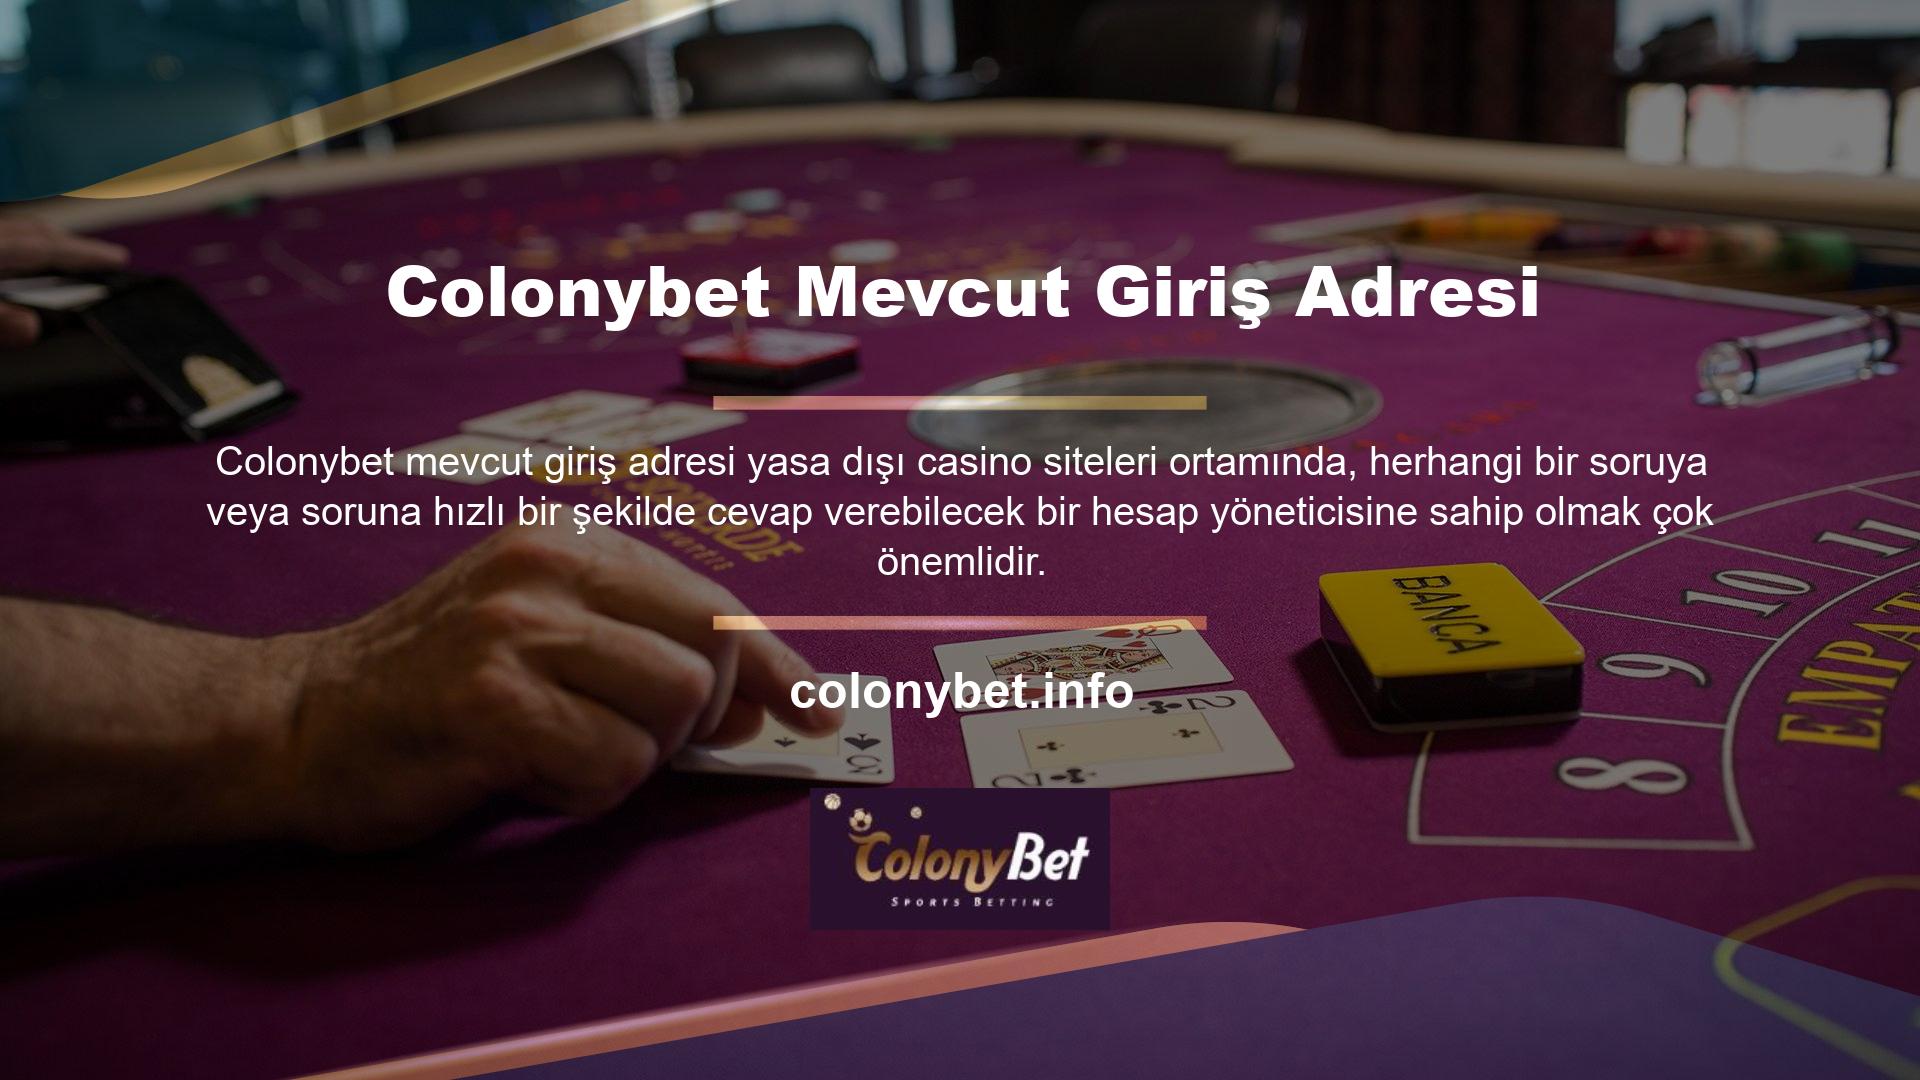 Colonybet bu alanda olabildiğince kendini geliştirmiştir ve Türkçe hazır bulunan müşteri temsilcilerinin çoğunu istihdam etmektedir